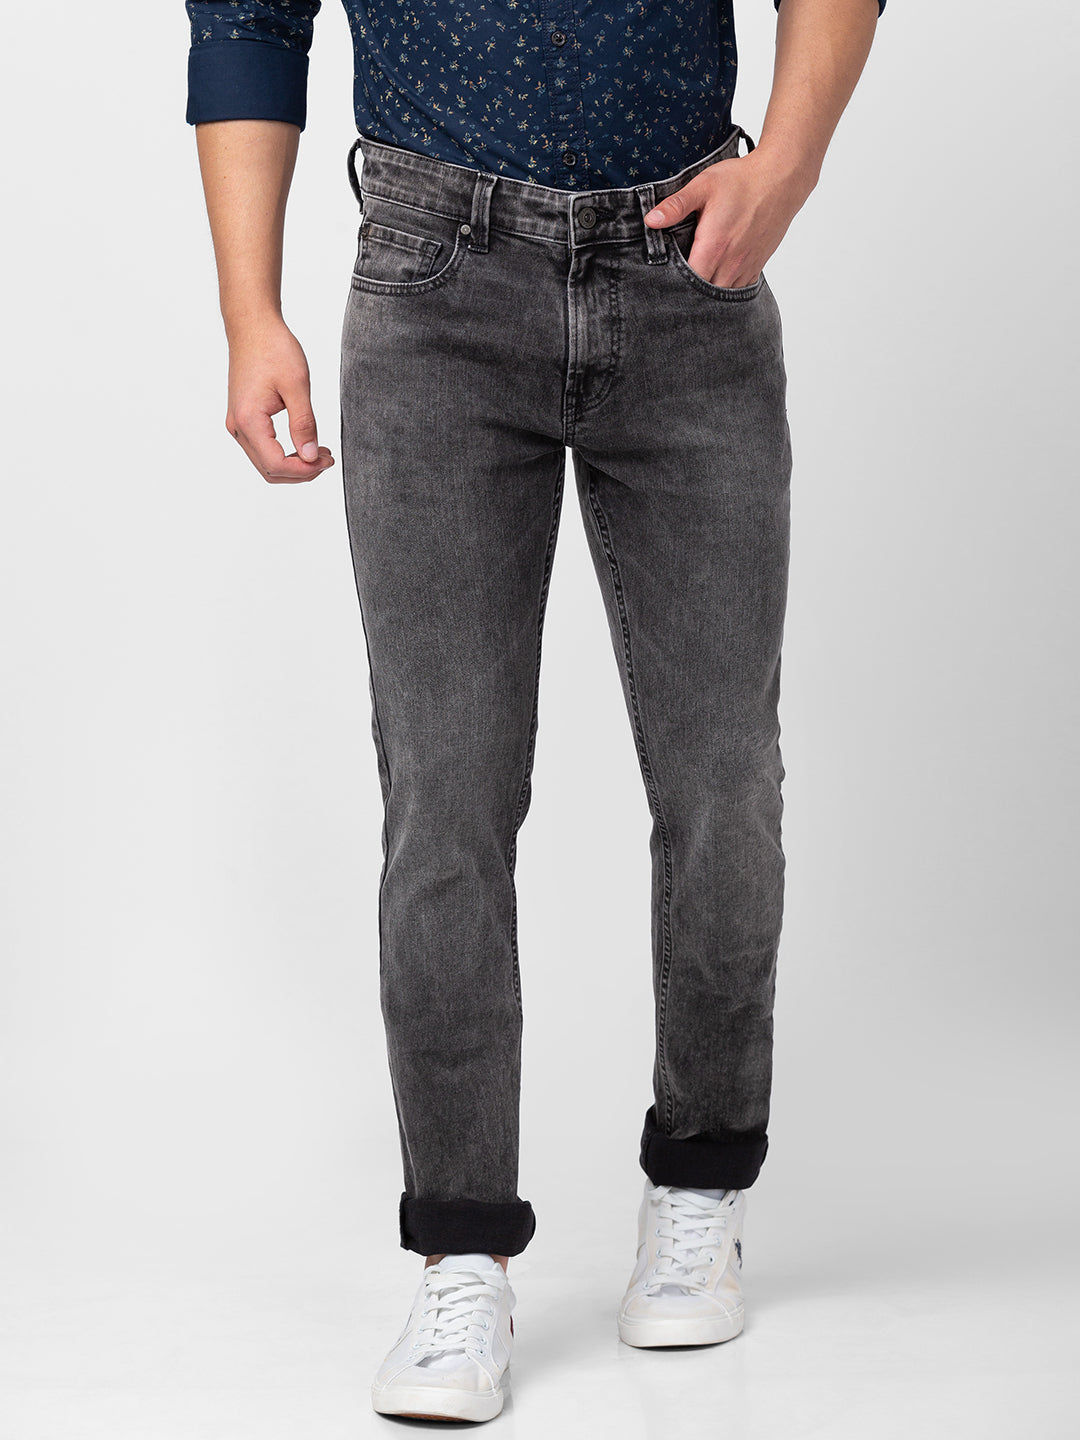 Buy OnlineSpykar Men Carbon Black Solid Slim HighRise Jeans Jogger